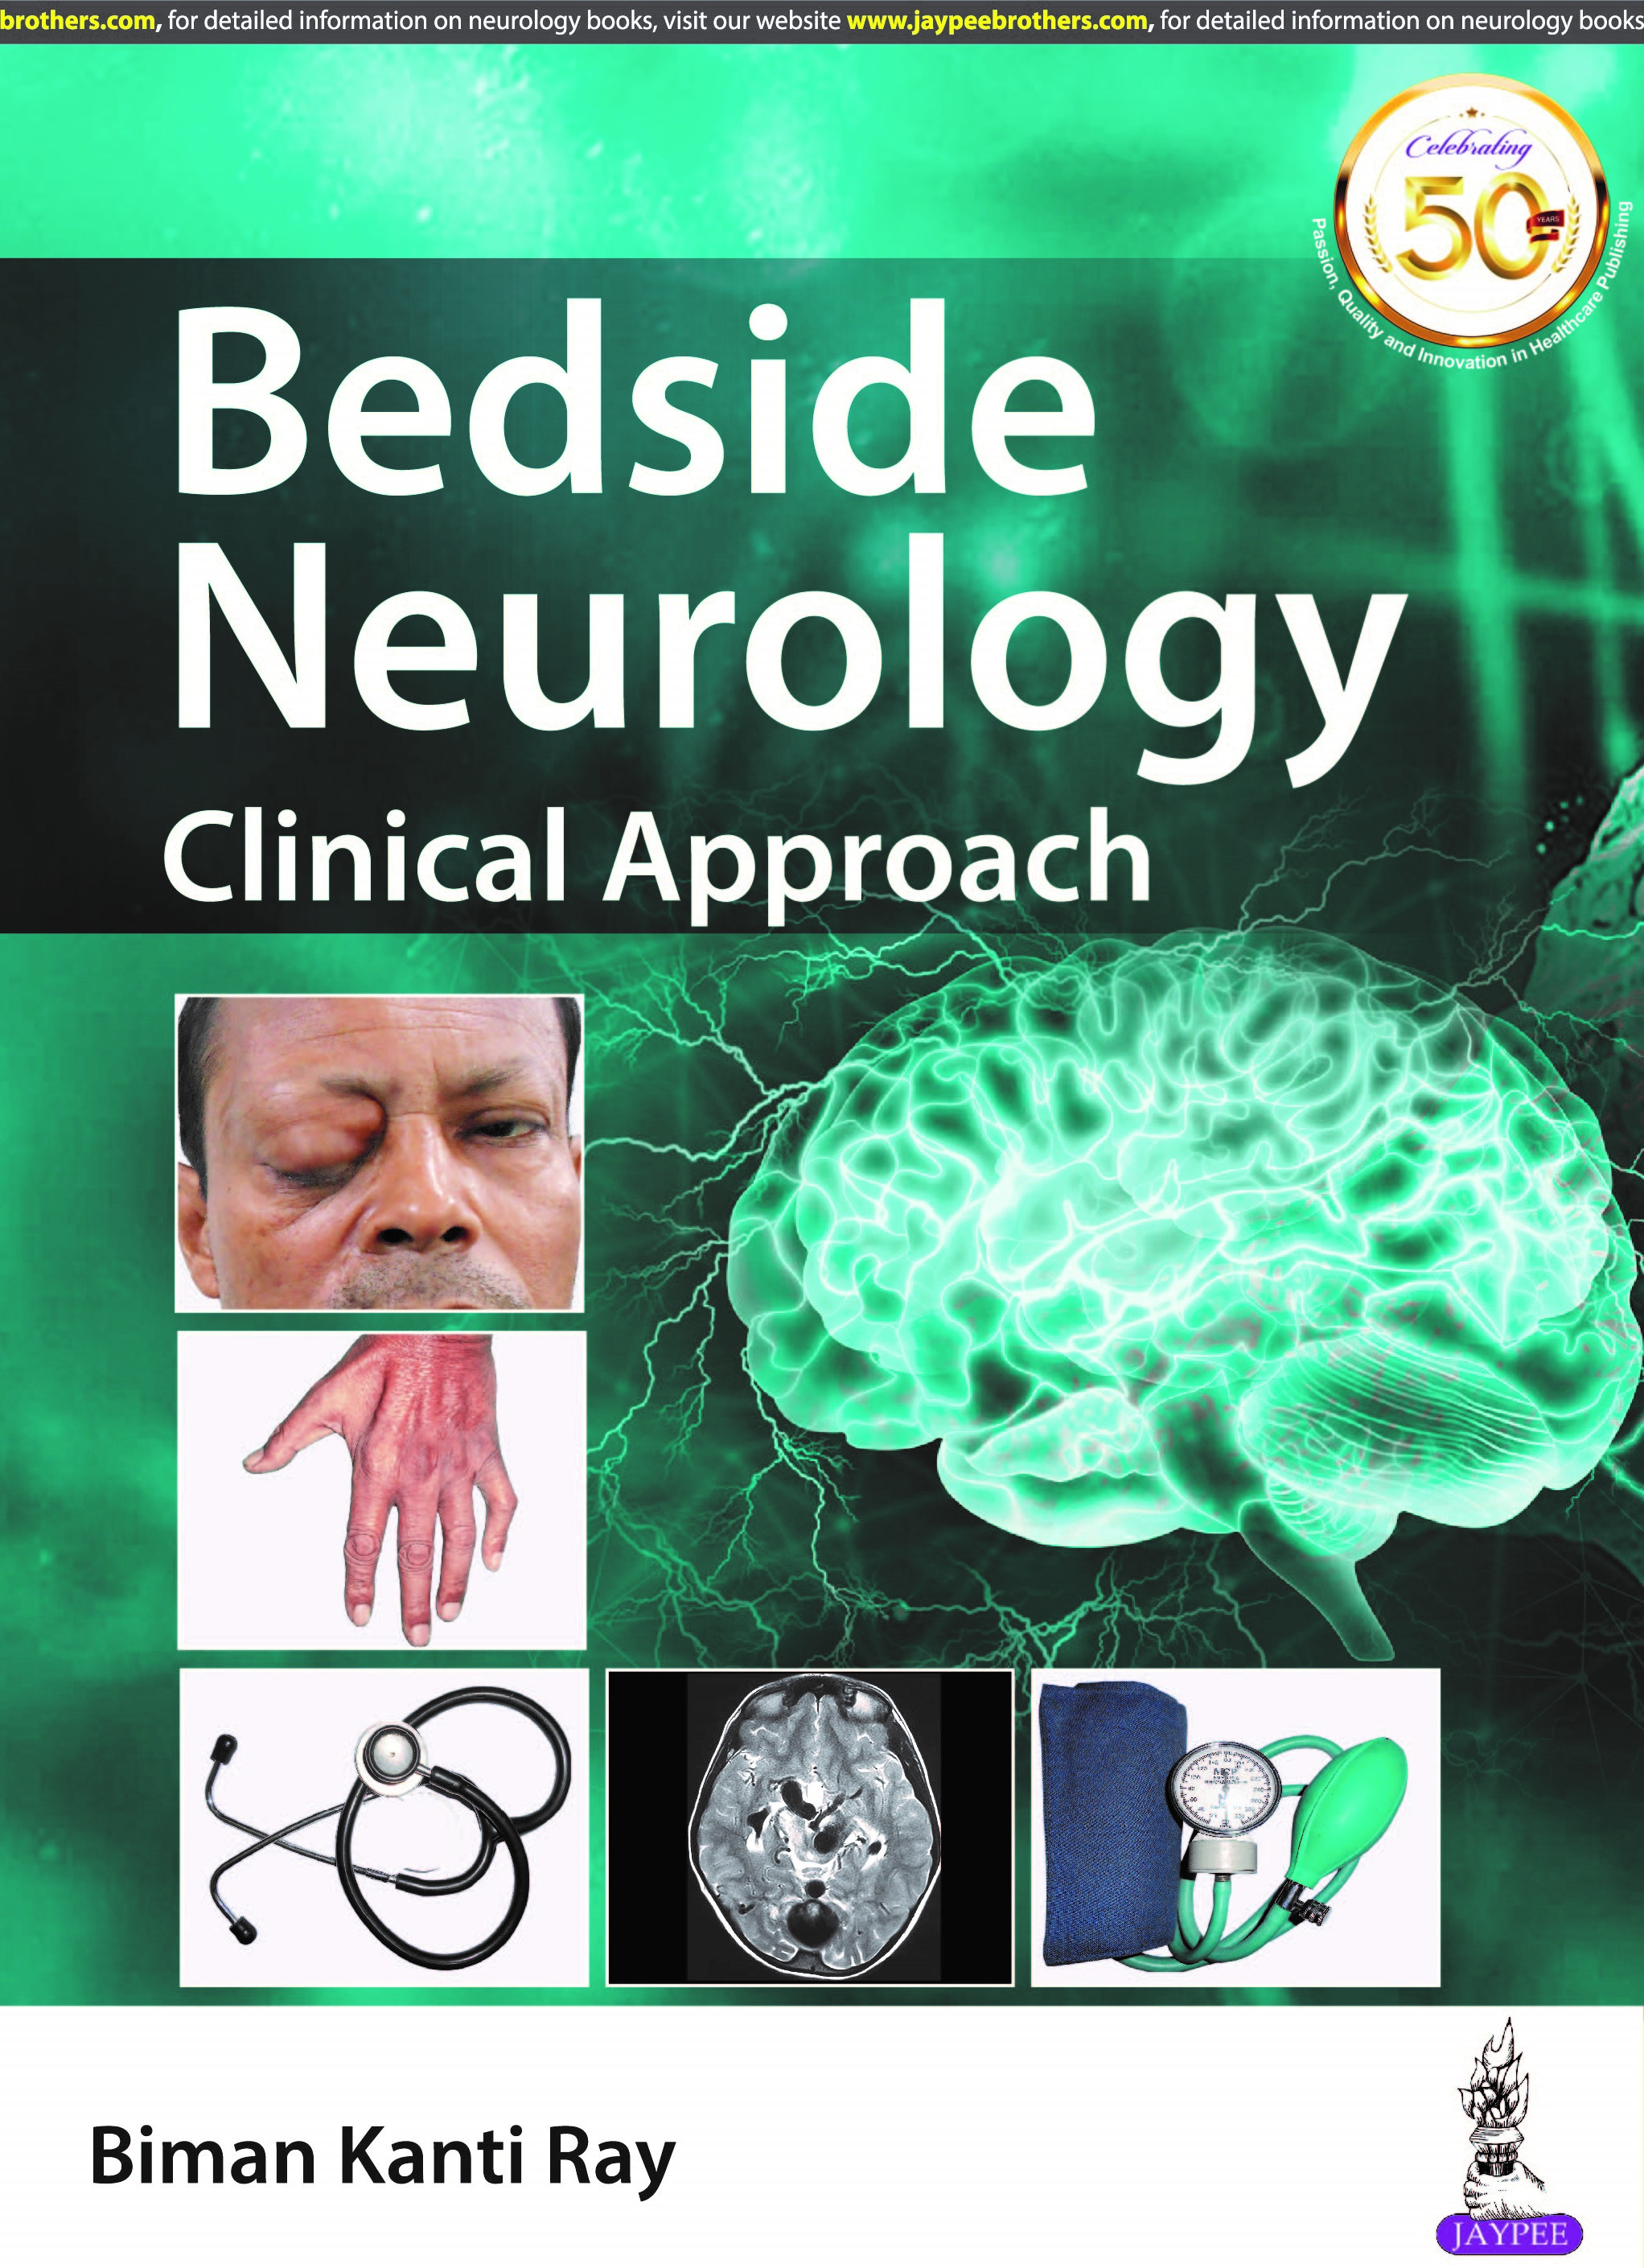 Bedside Neurology: Clinical Approach